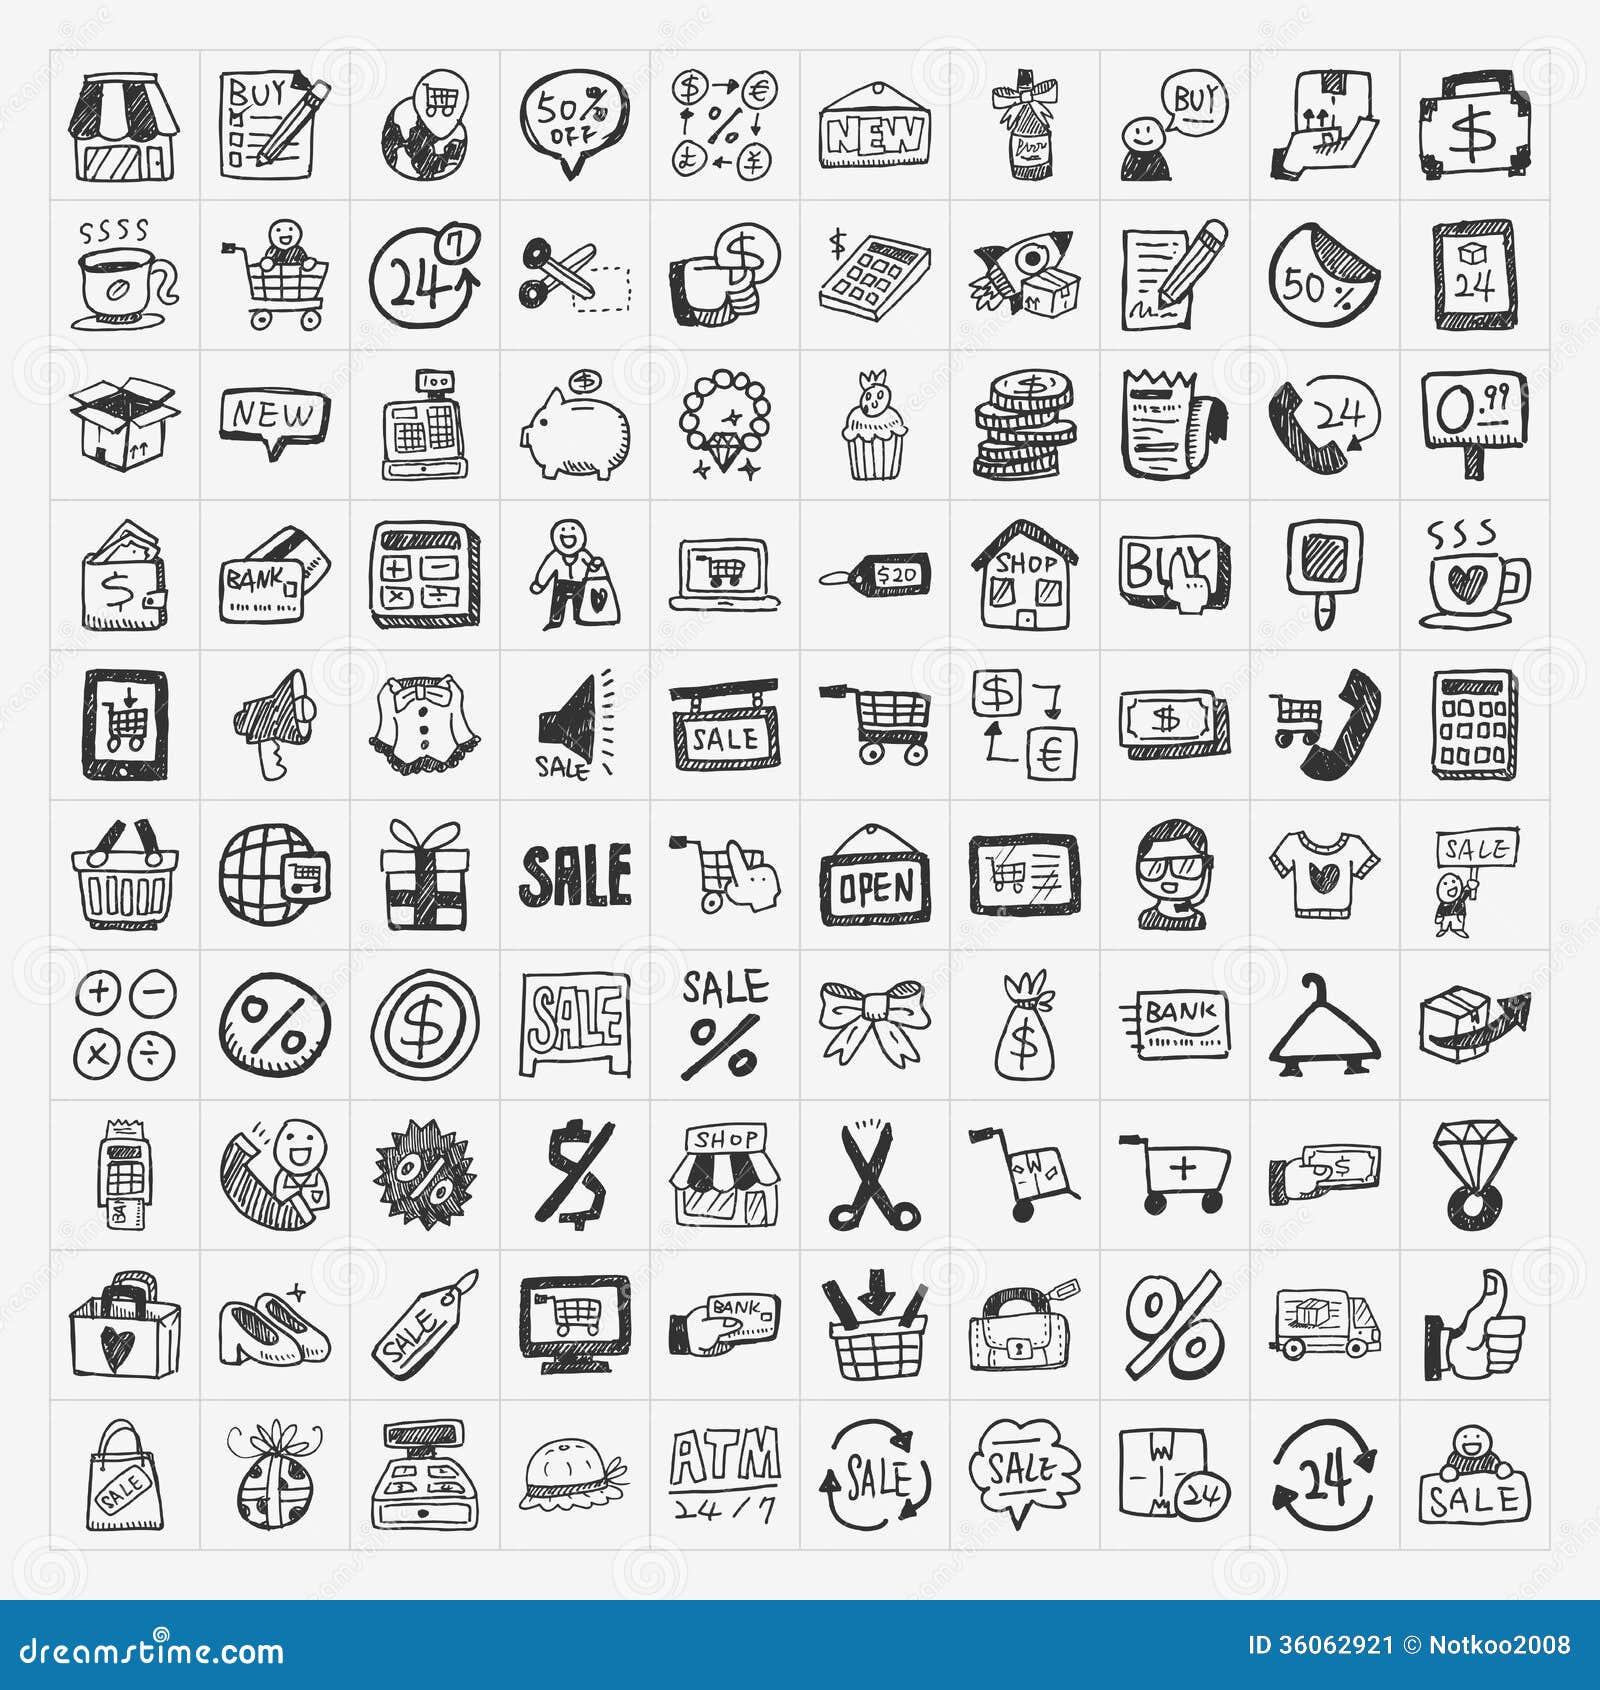 doodle shopping icons set